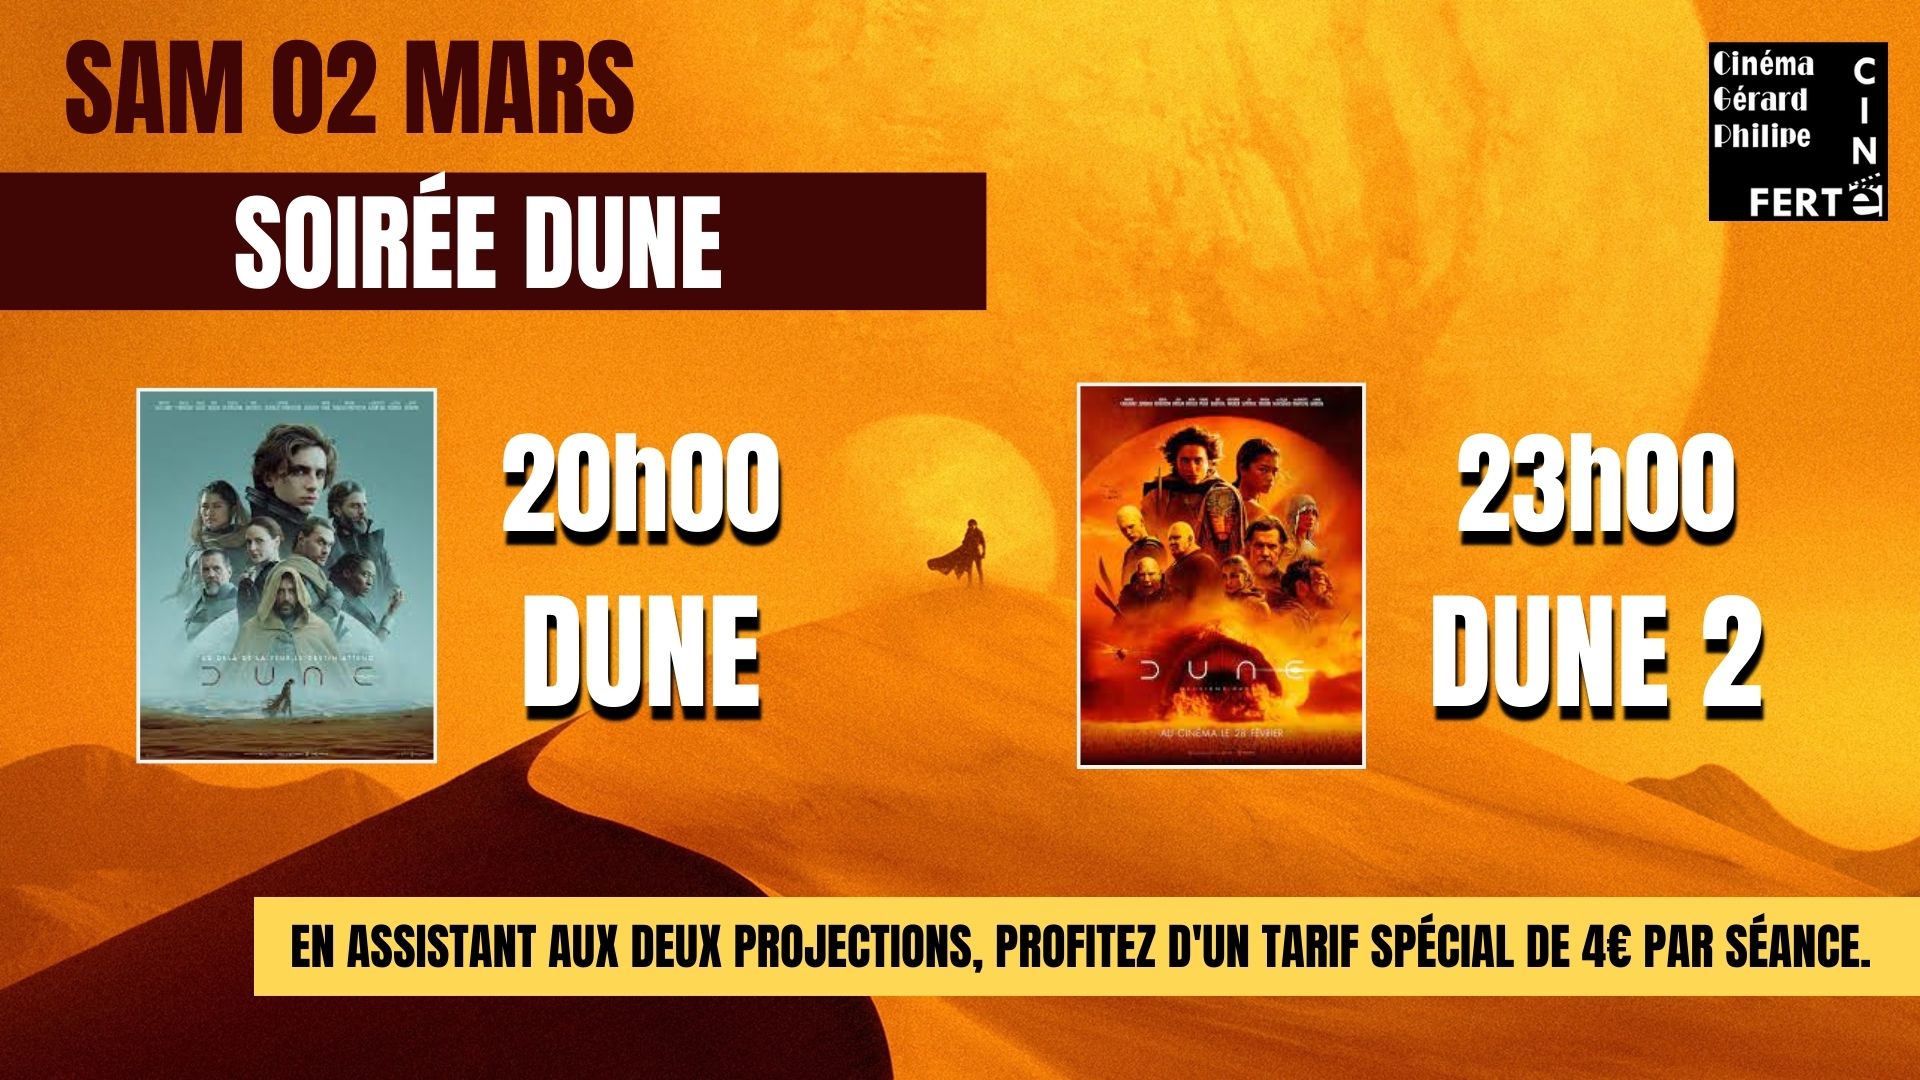 Soirée Dune